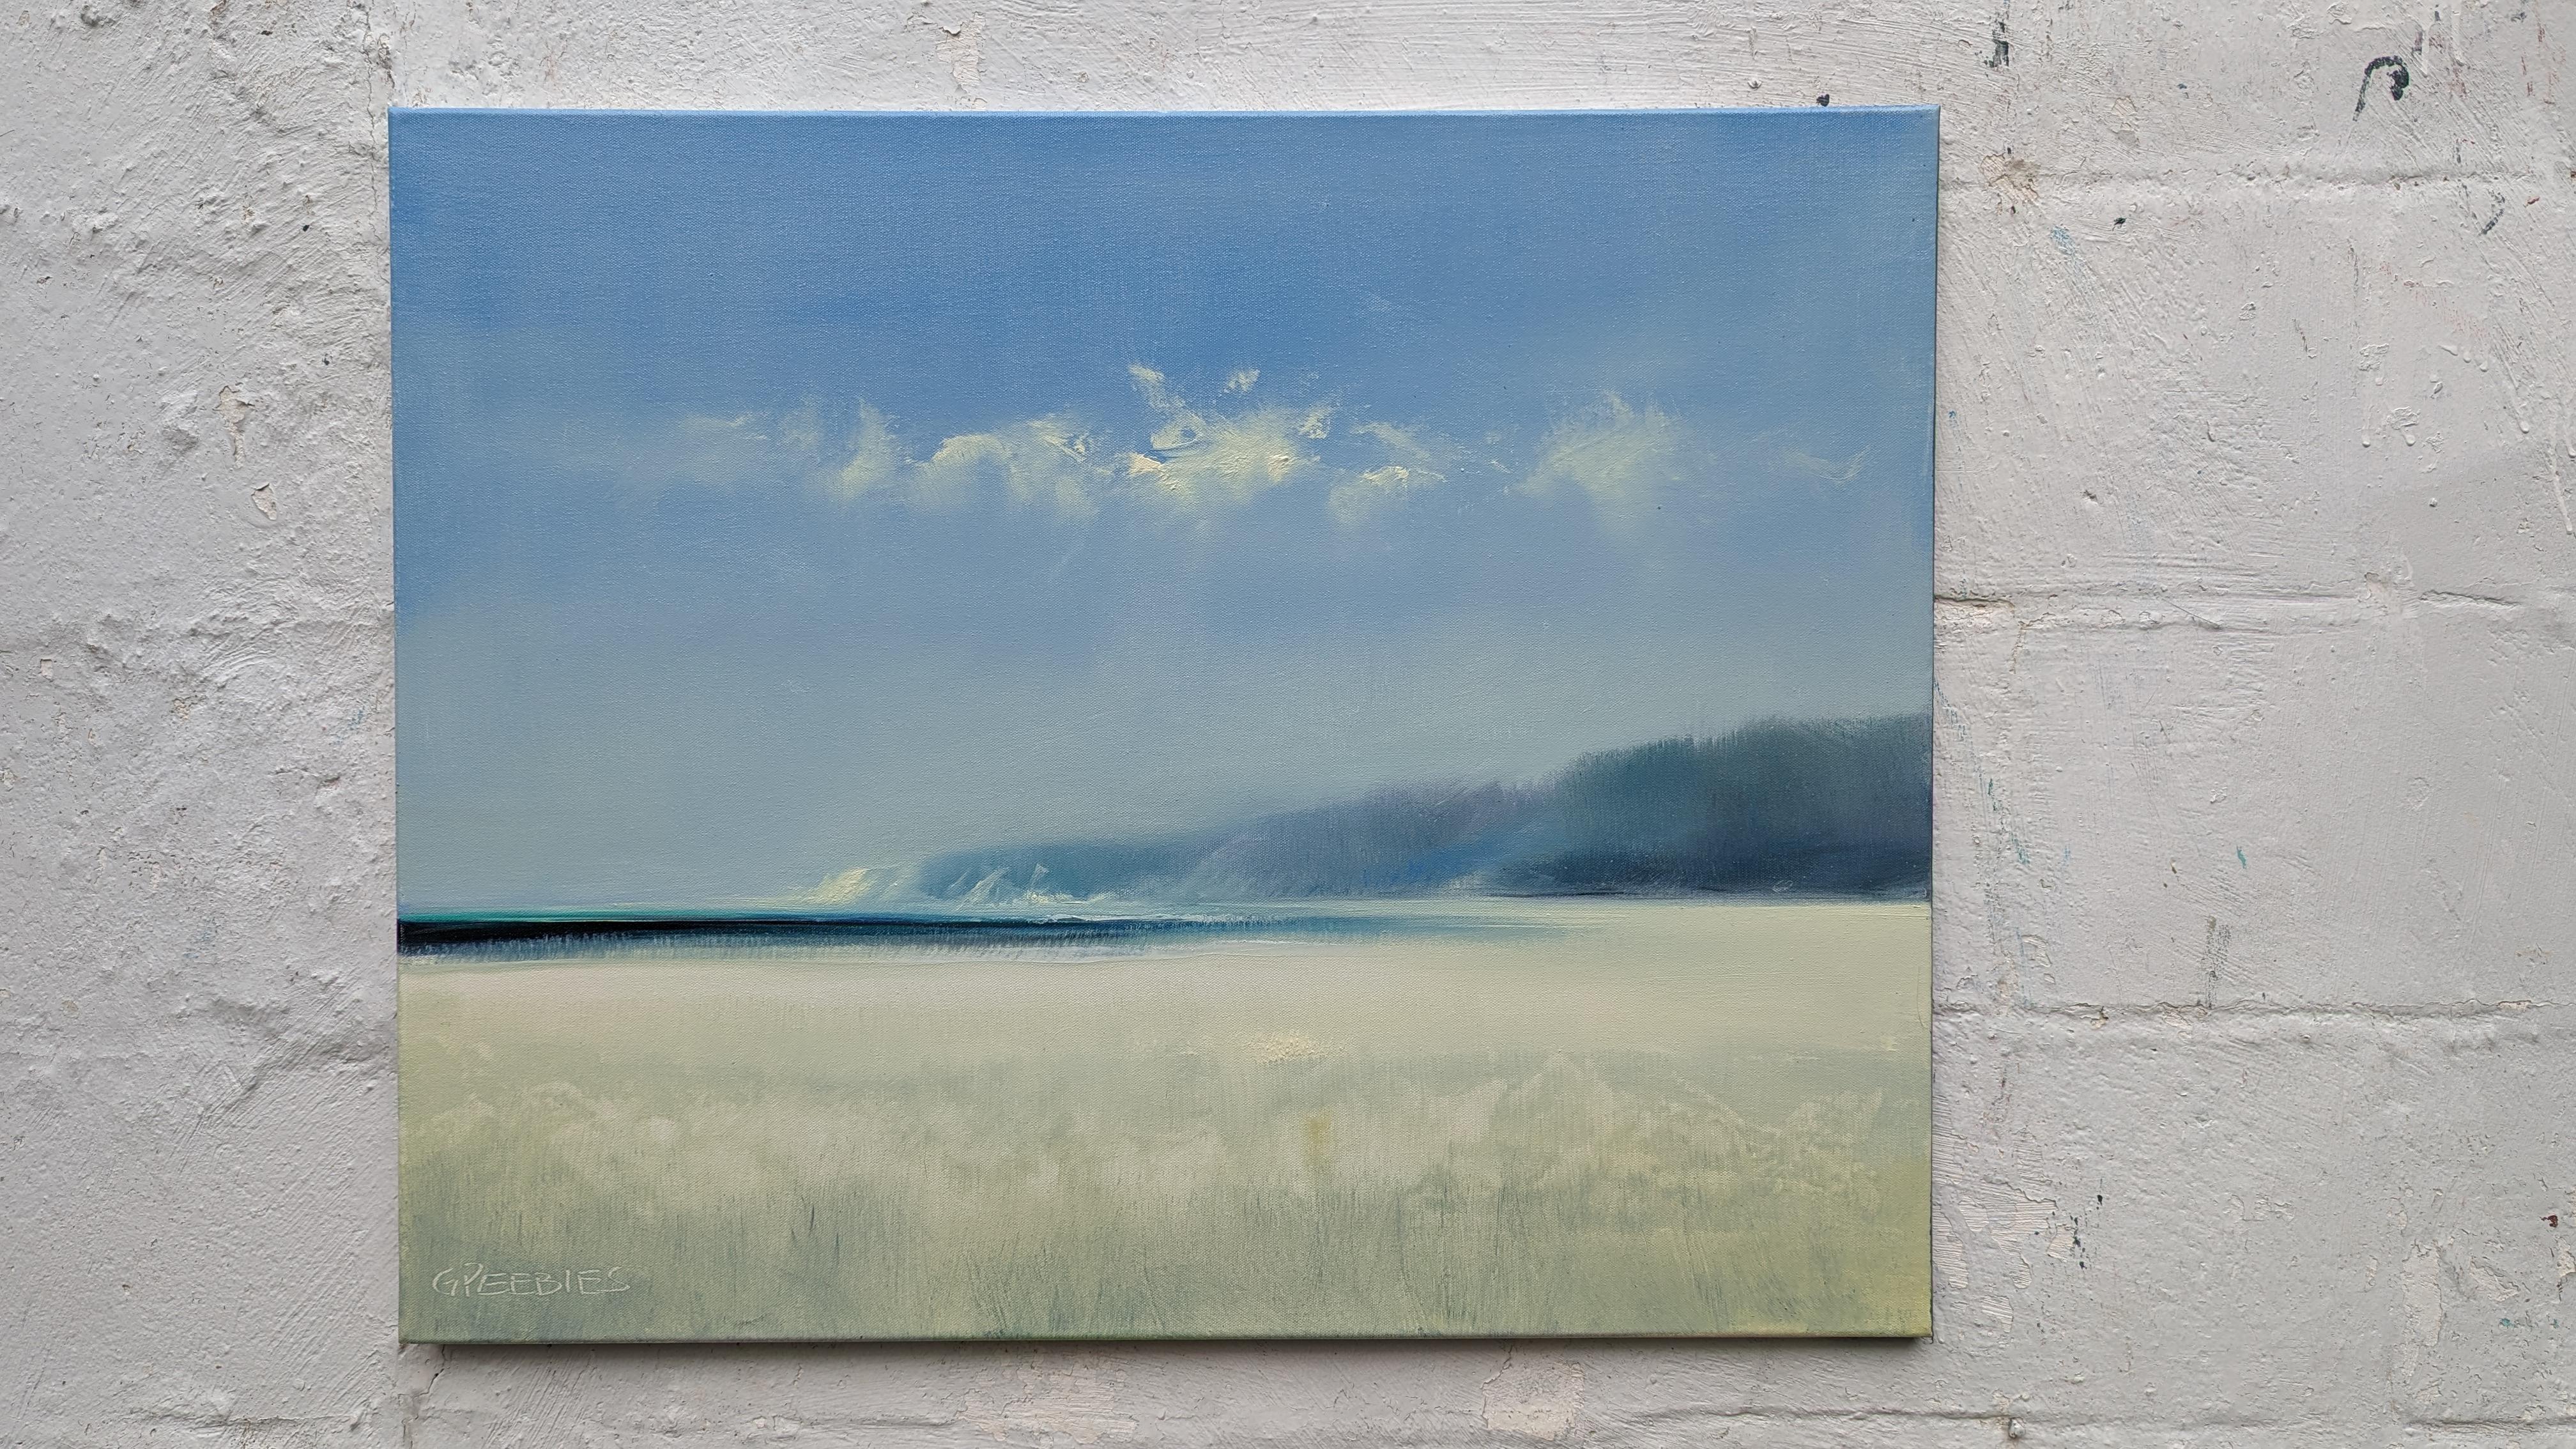 <p>Commentaires de l'artiste<br>L'artiste George Whiting présente un paysage marin abstrait avec des tons de bleu et de blanc. Un spectacle de couleurs subtiles et un lieu privilégié pour se recueillir. L'atmosphère éthérée apporte un sentiment de